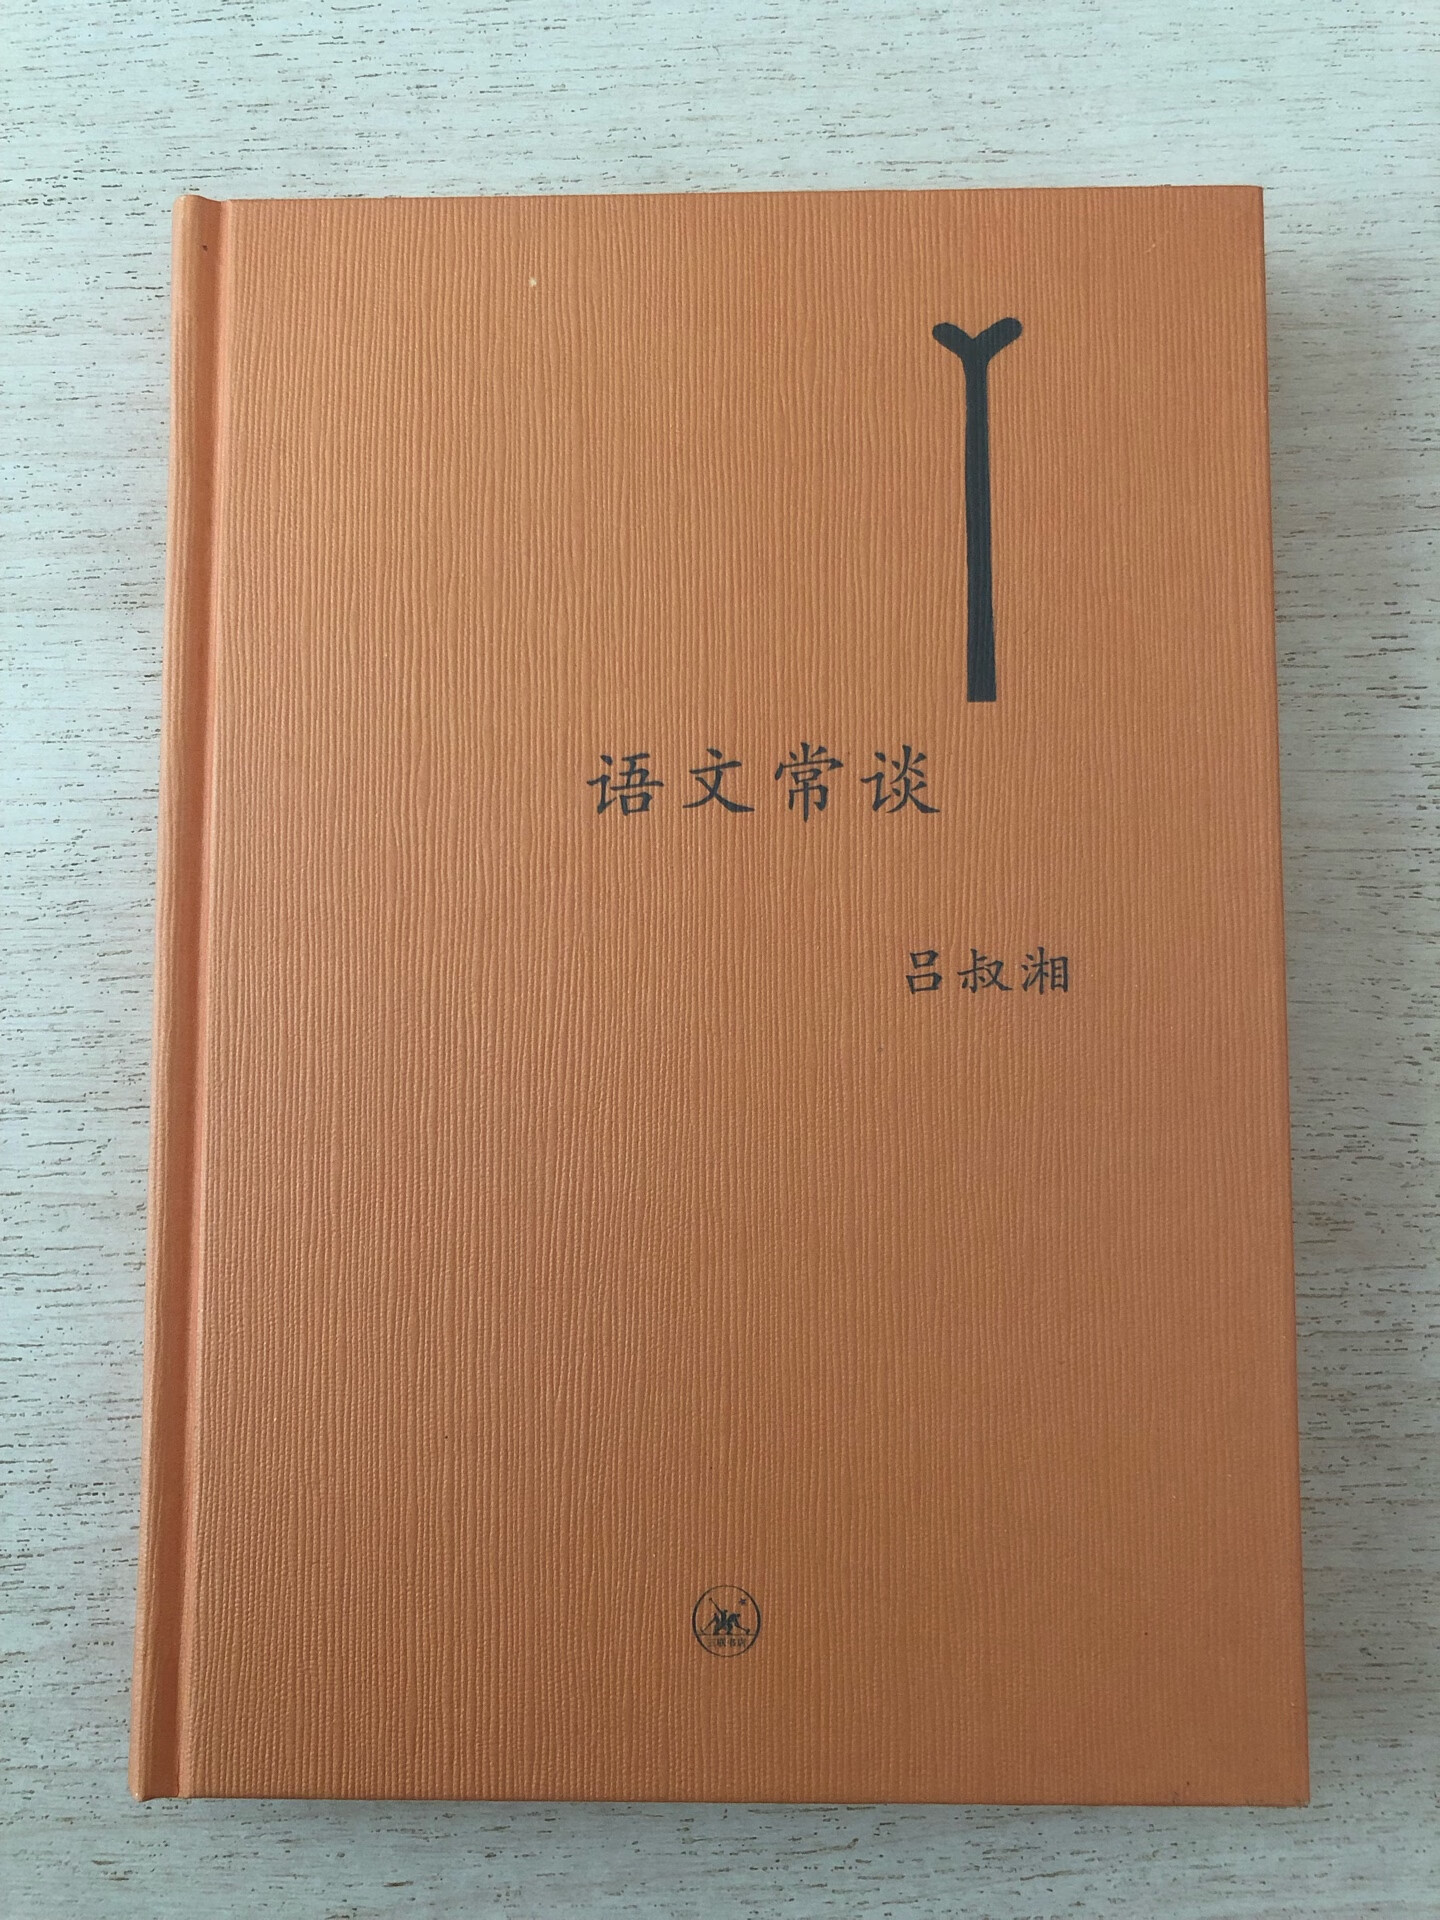 吕叔湘先生是当代著名的语言学家，他的文章文字往往深入浅出，娓娓道来；既联系生活，由可见学者的修养与识见。